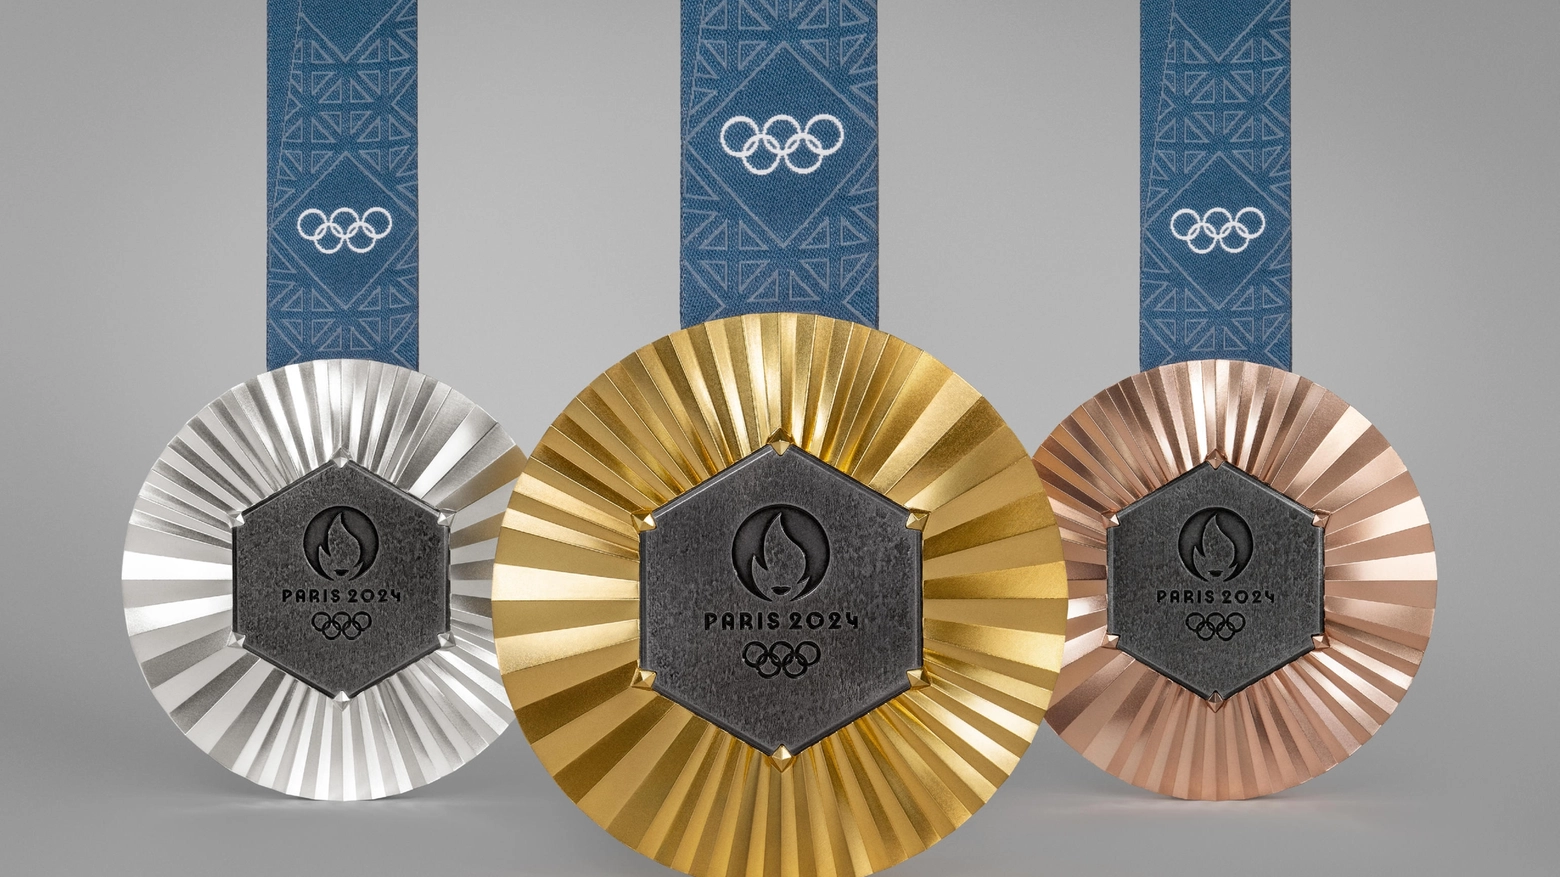 Al centro dei premi che saranno assegnati a chi salirà sul podio alle Olimpiadi pezzi della prima versione del monumento simbolo di Parigi